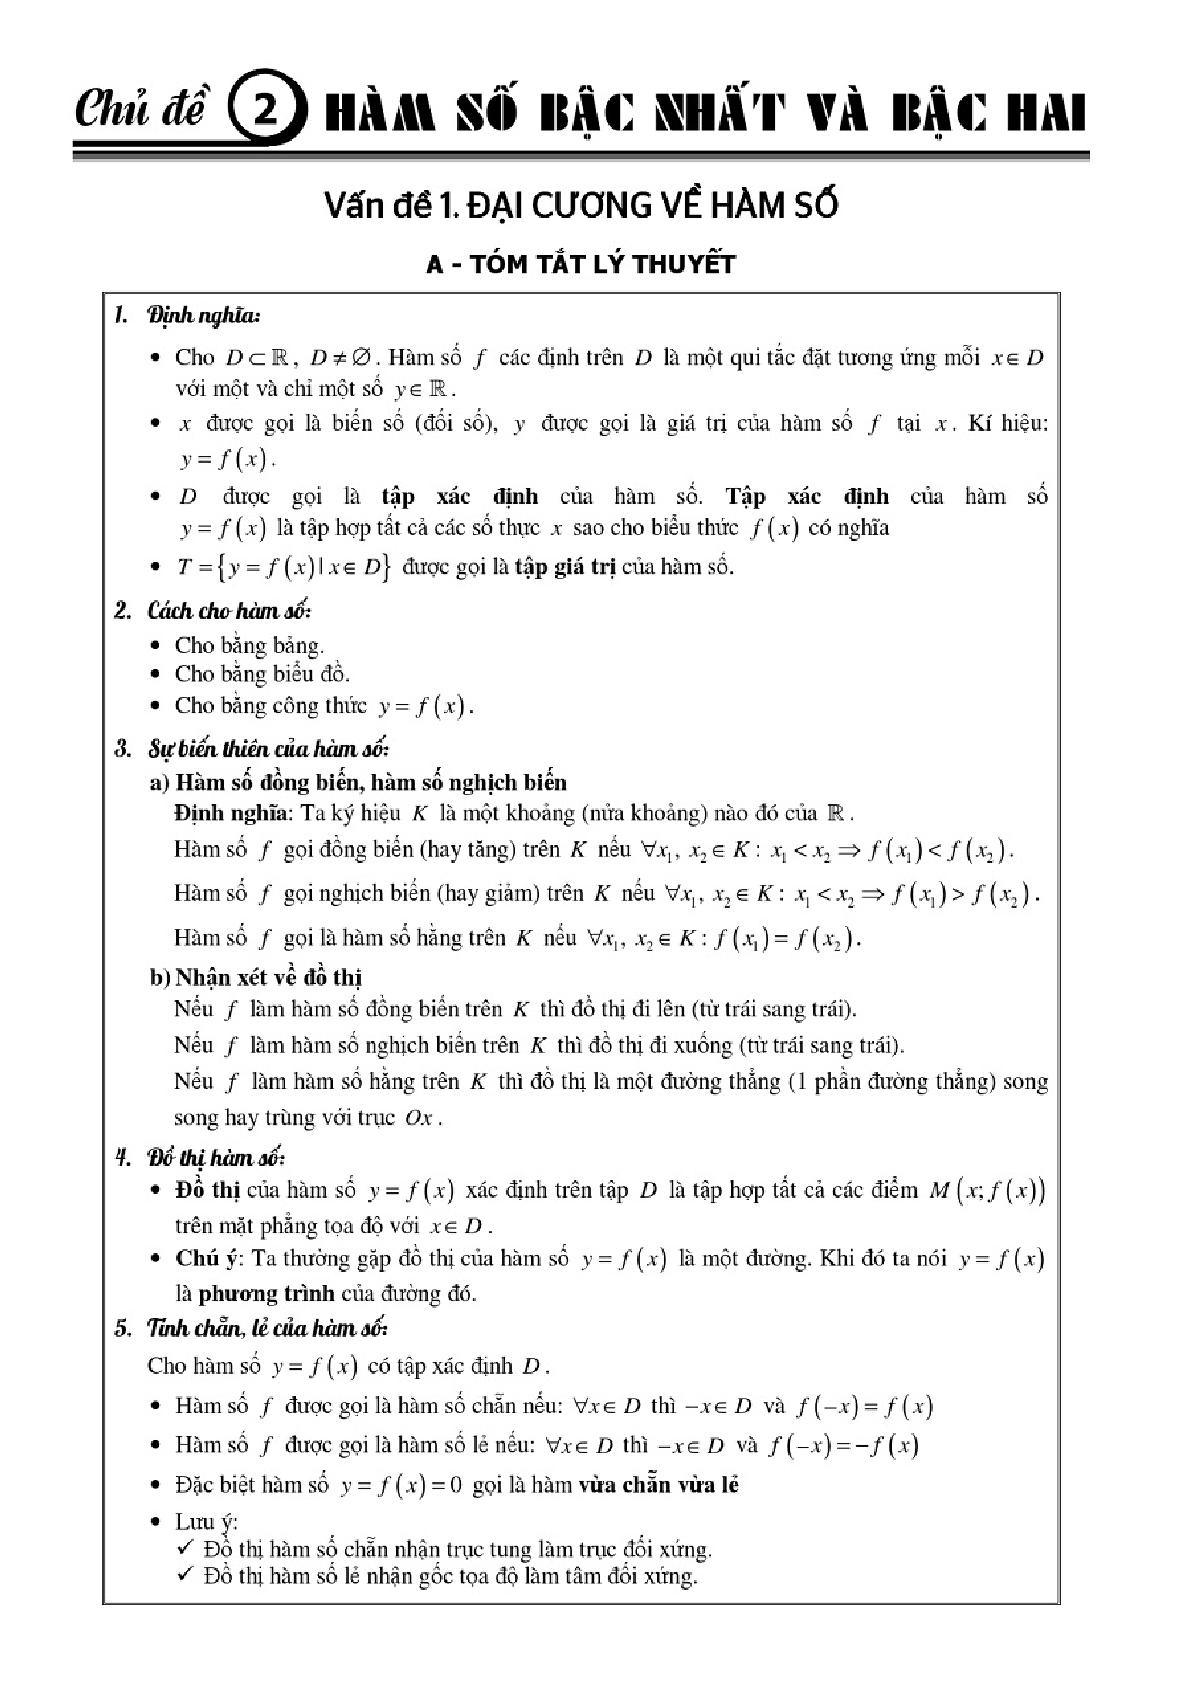 Bài giảng chuyên đề hàm số và ứng dụng giúp học sinh tự học (trang 1)